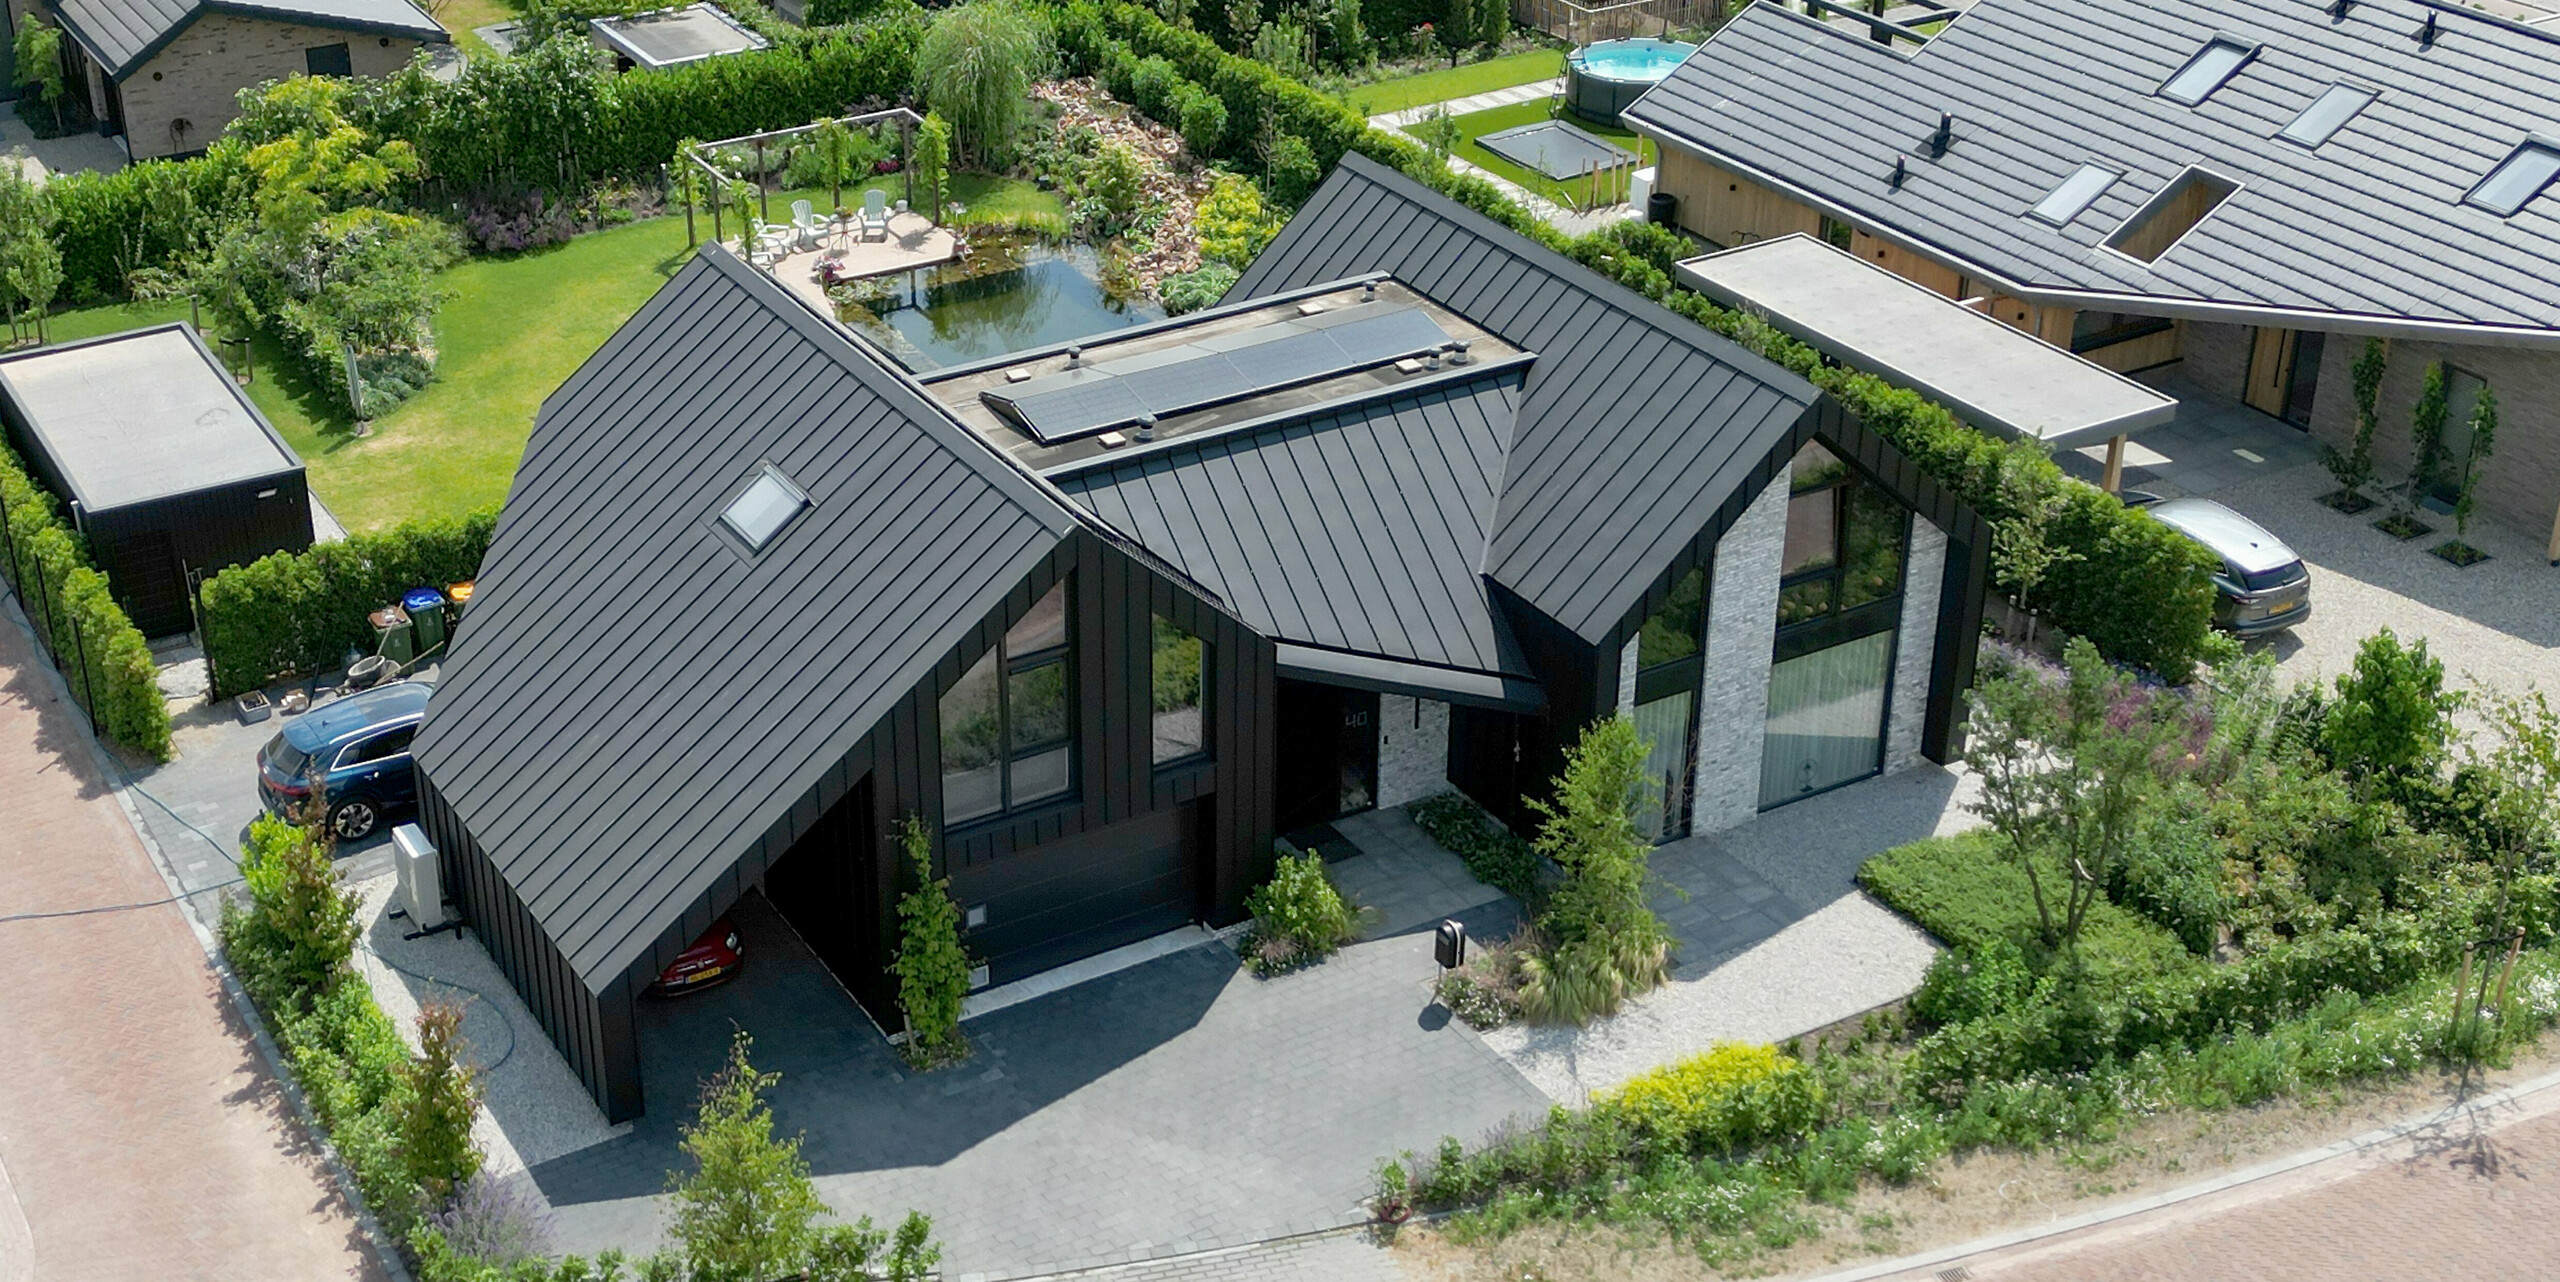 Pohled z ptačí perspektivy na impozantní rodinný dům v nizozemském Veenendaalu, který se vyznačuje černou střechou PREFALZ a harmonickým začleněním do okolní zahradní krajiny. Dům má moderní konstrukci sedlové střechy a je ukázkovým příkladem moderní architektury díky svým jasným liniím a velkým proskleným plochám, orámovaným živou zelení. Dobře promyšlený krajinářský design, včetně soukromé příjezdové cesty a zahrady, umocňuje promyšlenou estetiku nemovitosti.